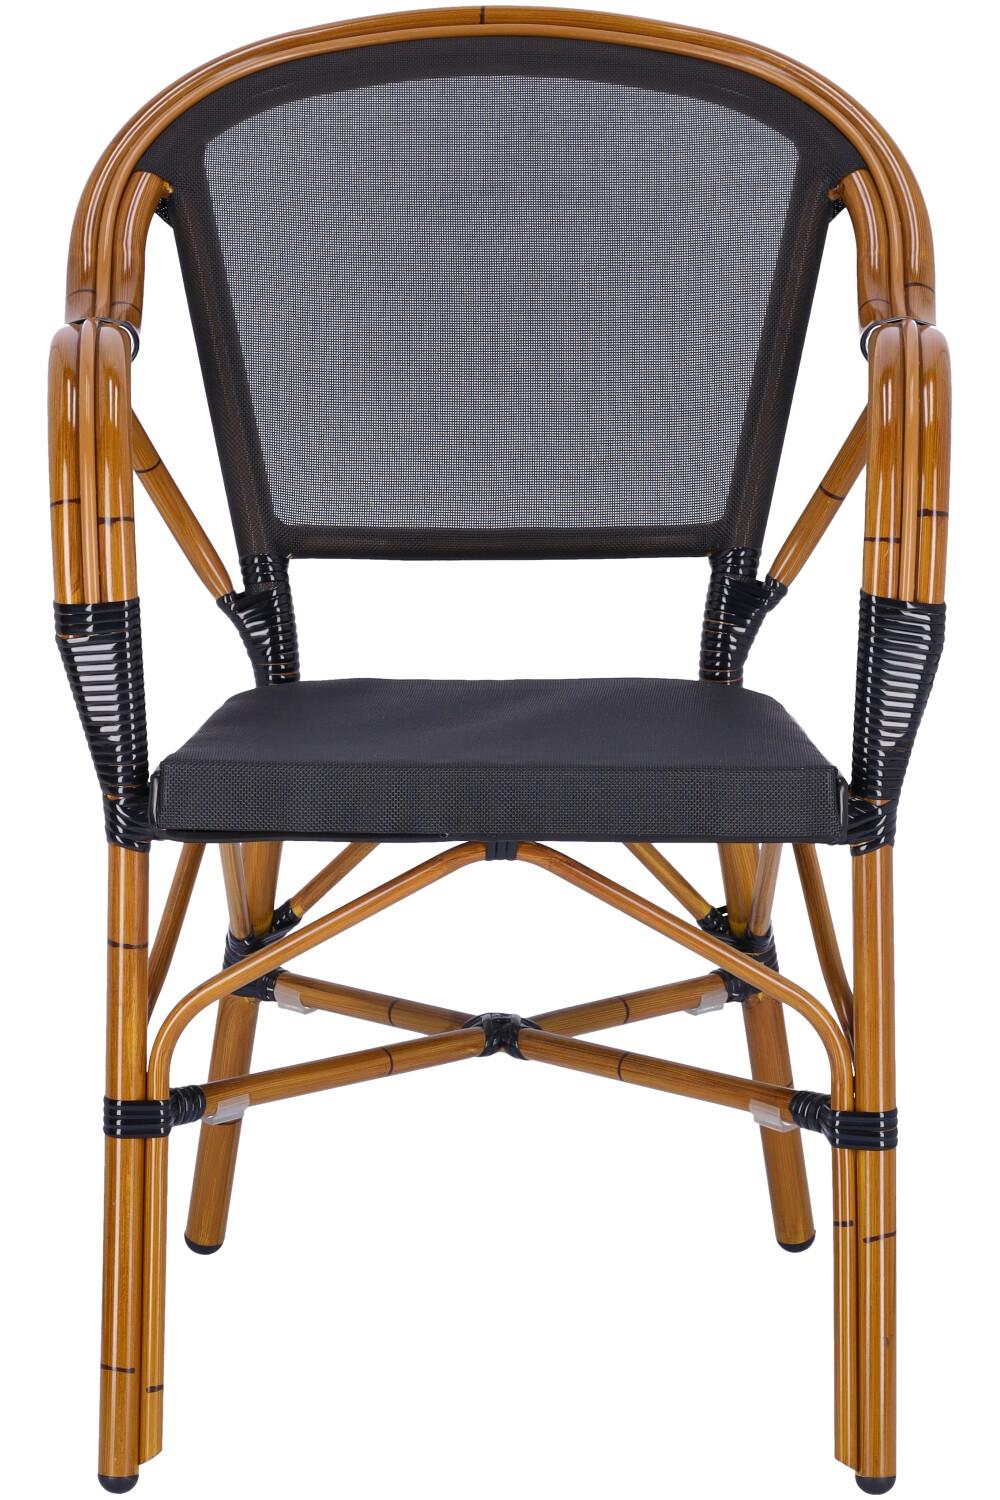 Abbildung arm chair Malou Vorderansicht